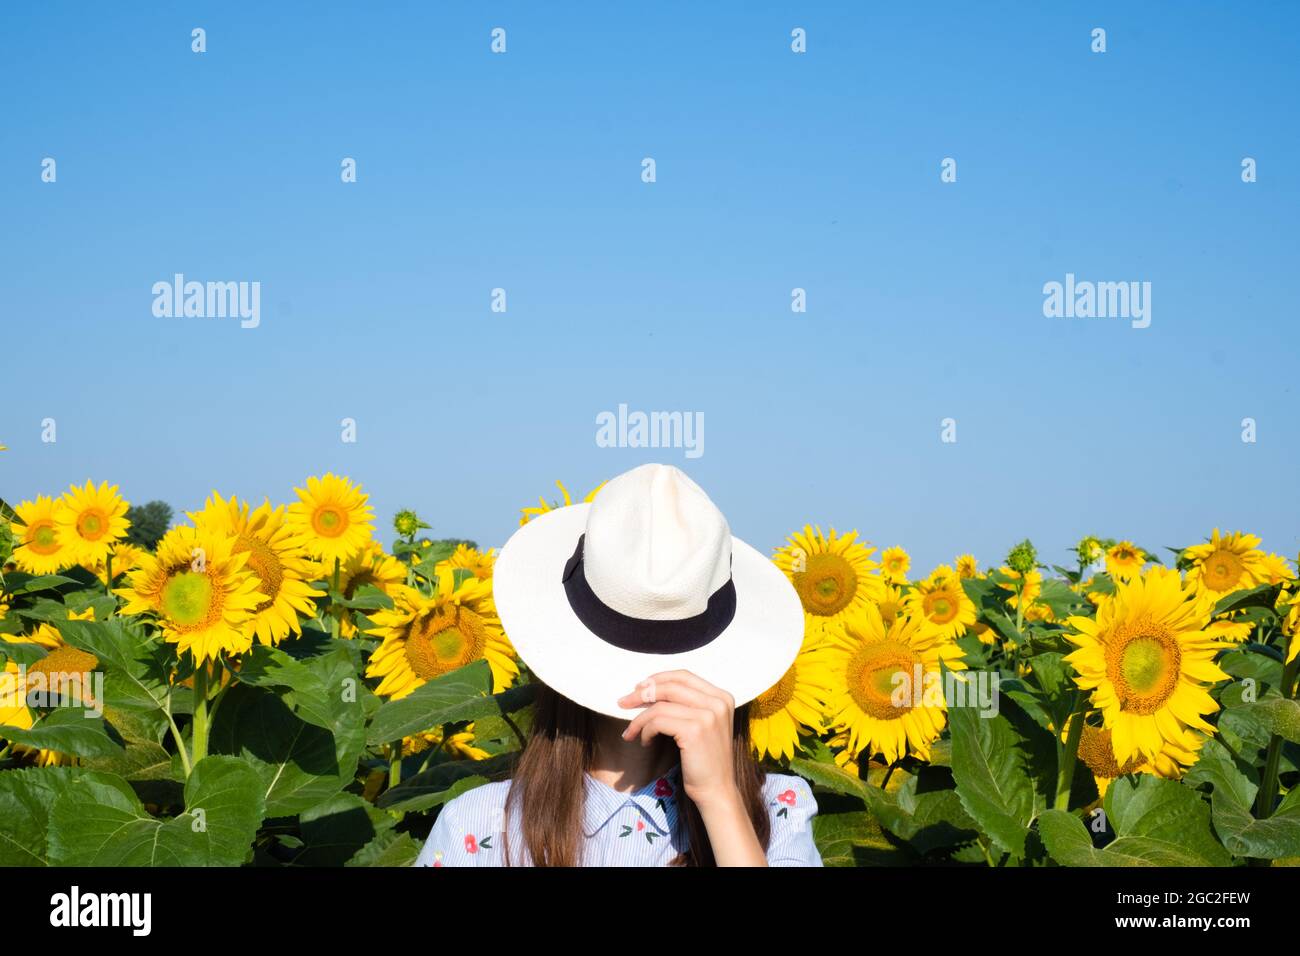 Portrait d'une fille couvre son visage avec un chapeau dans un champ de tournesols. Photo de haute qualité Banque D'Images